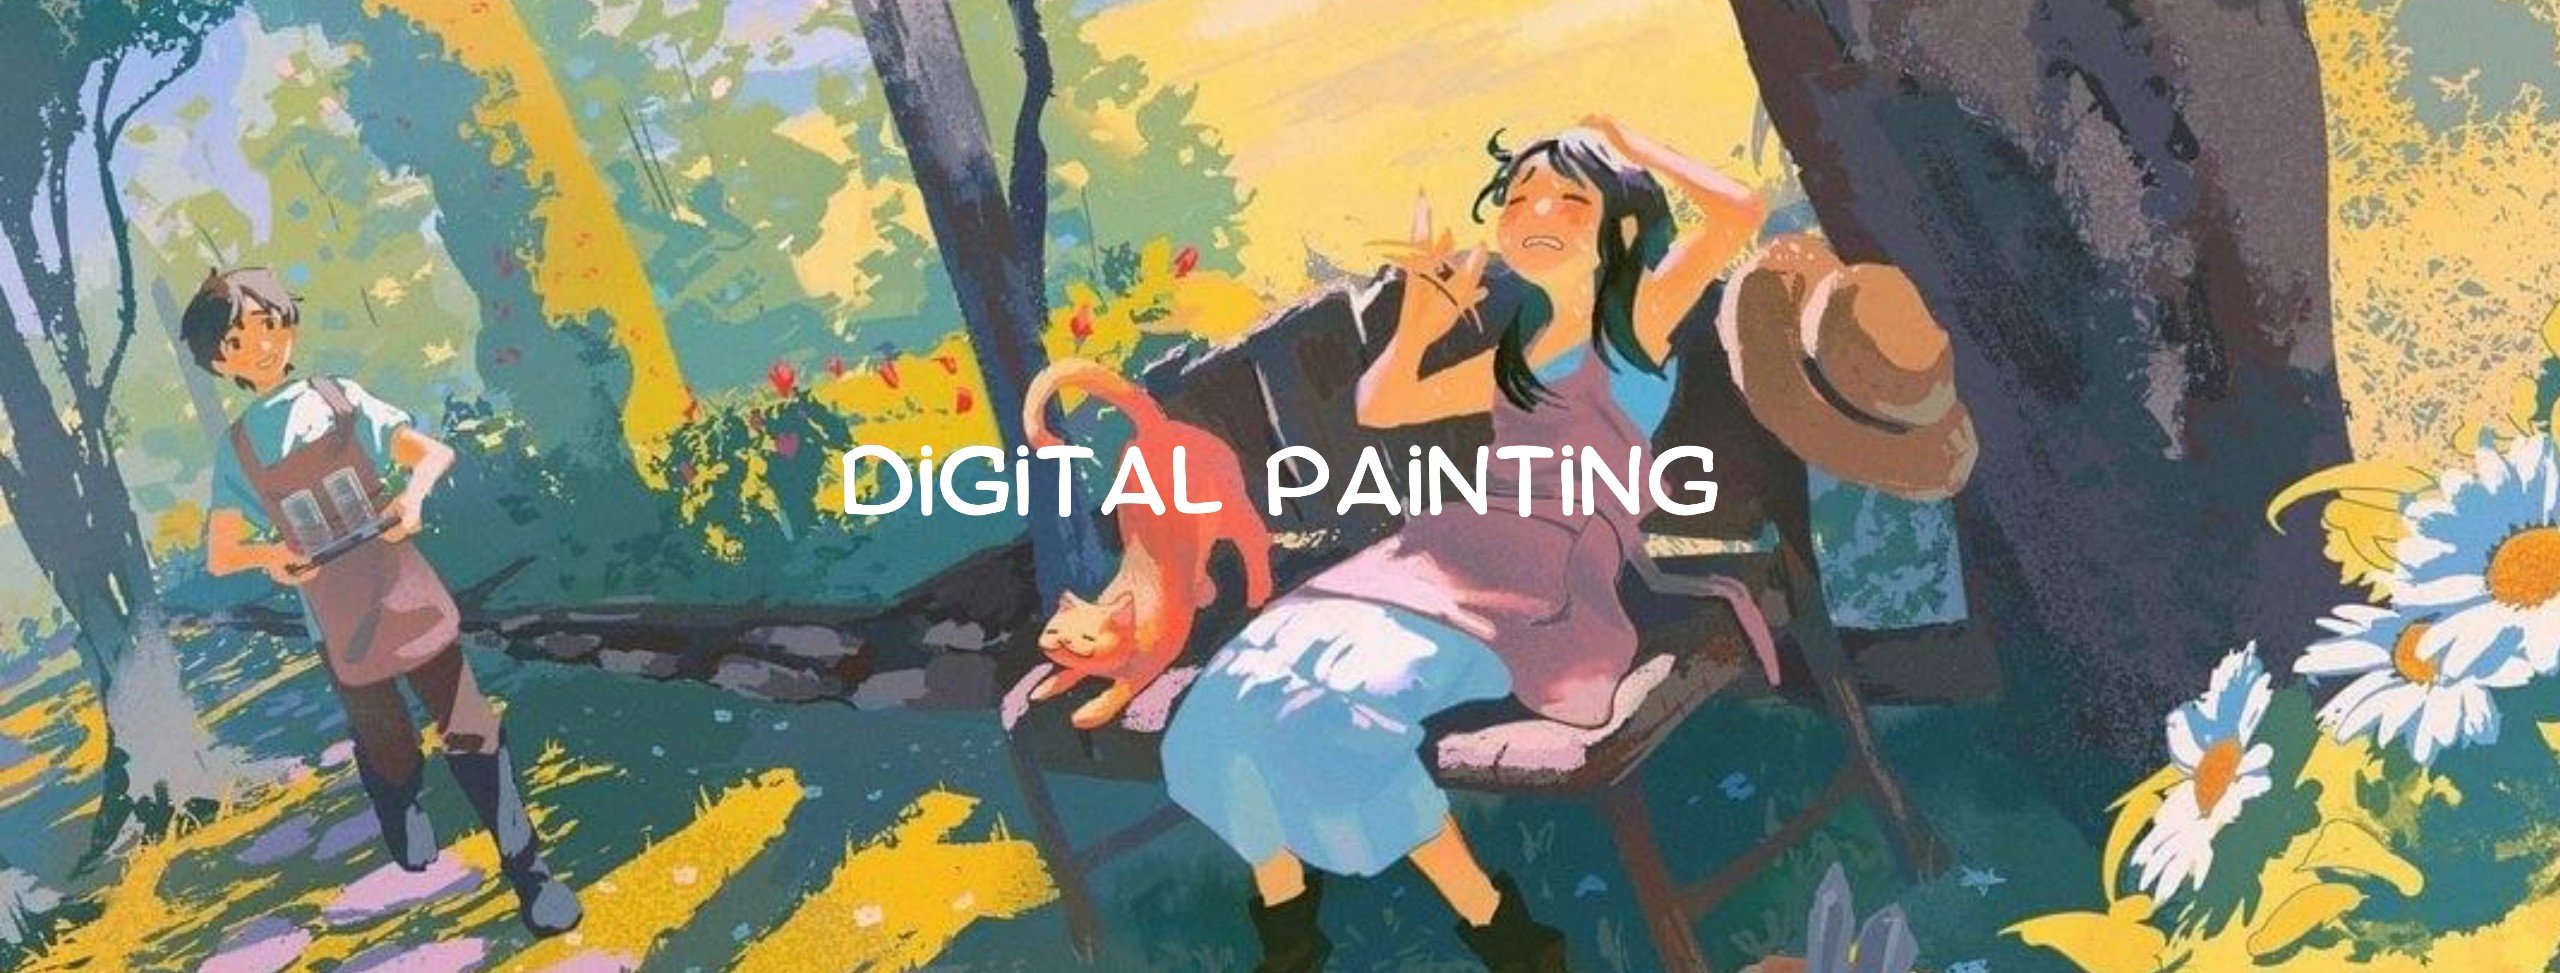 Digital Painting- Ngành nghề digital painting 